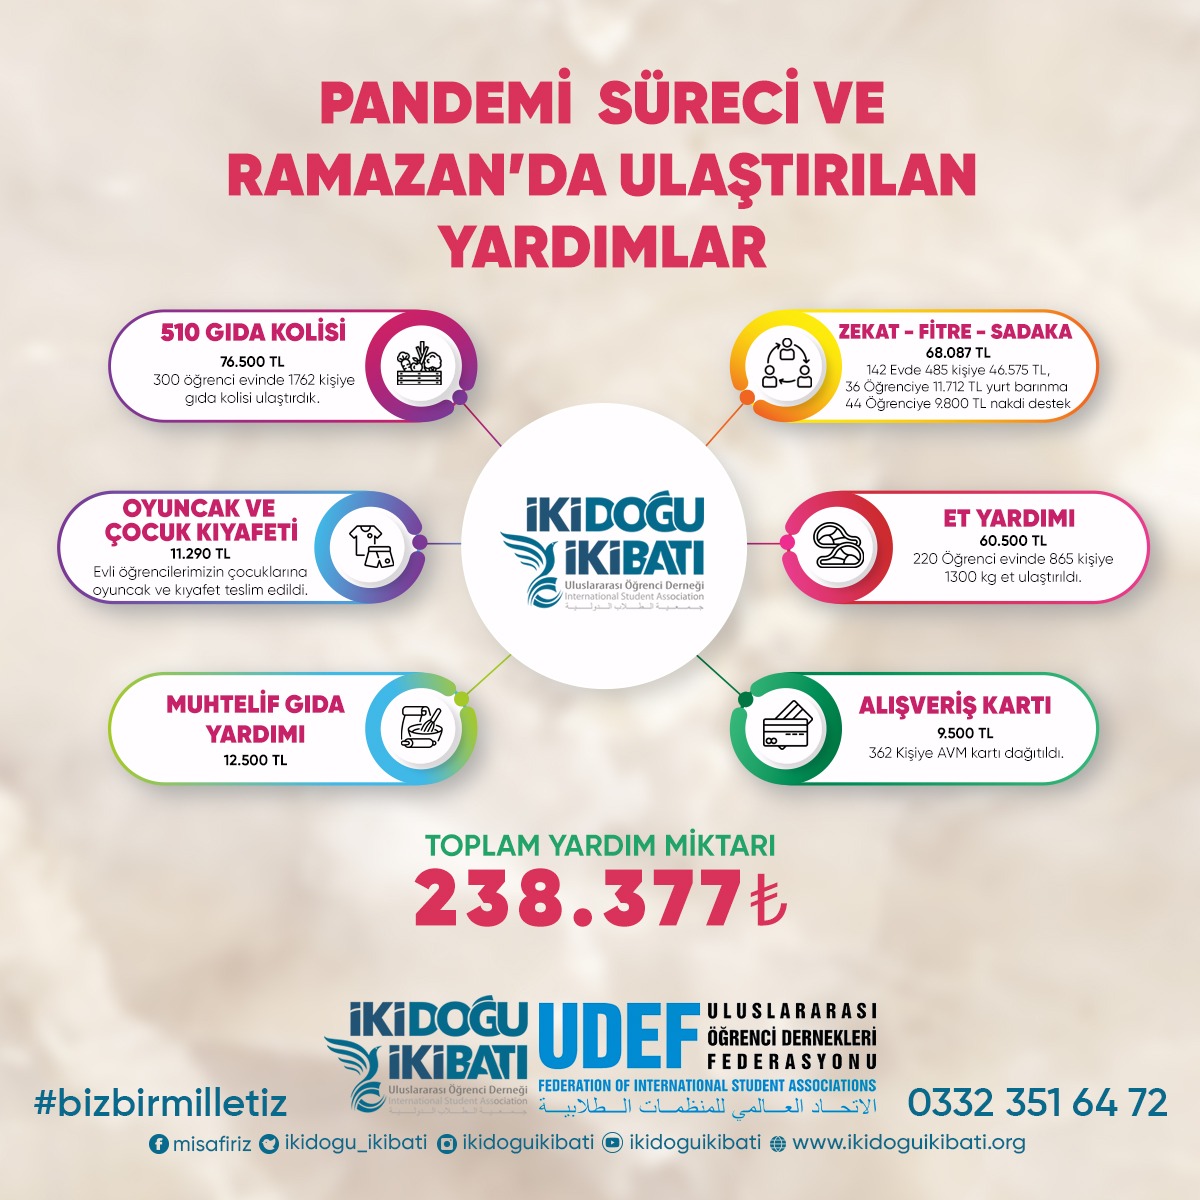 Konya’daki Uluslararası Öğrencilere 238 bin 377 TL Değerinde Bağış